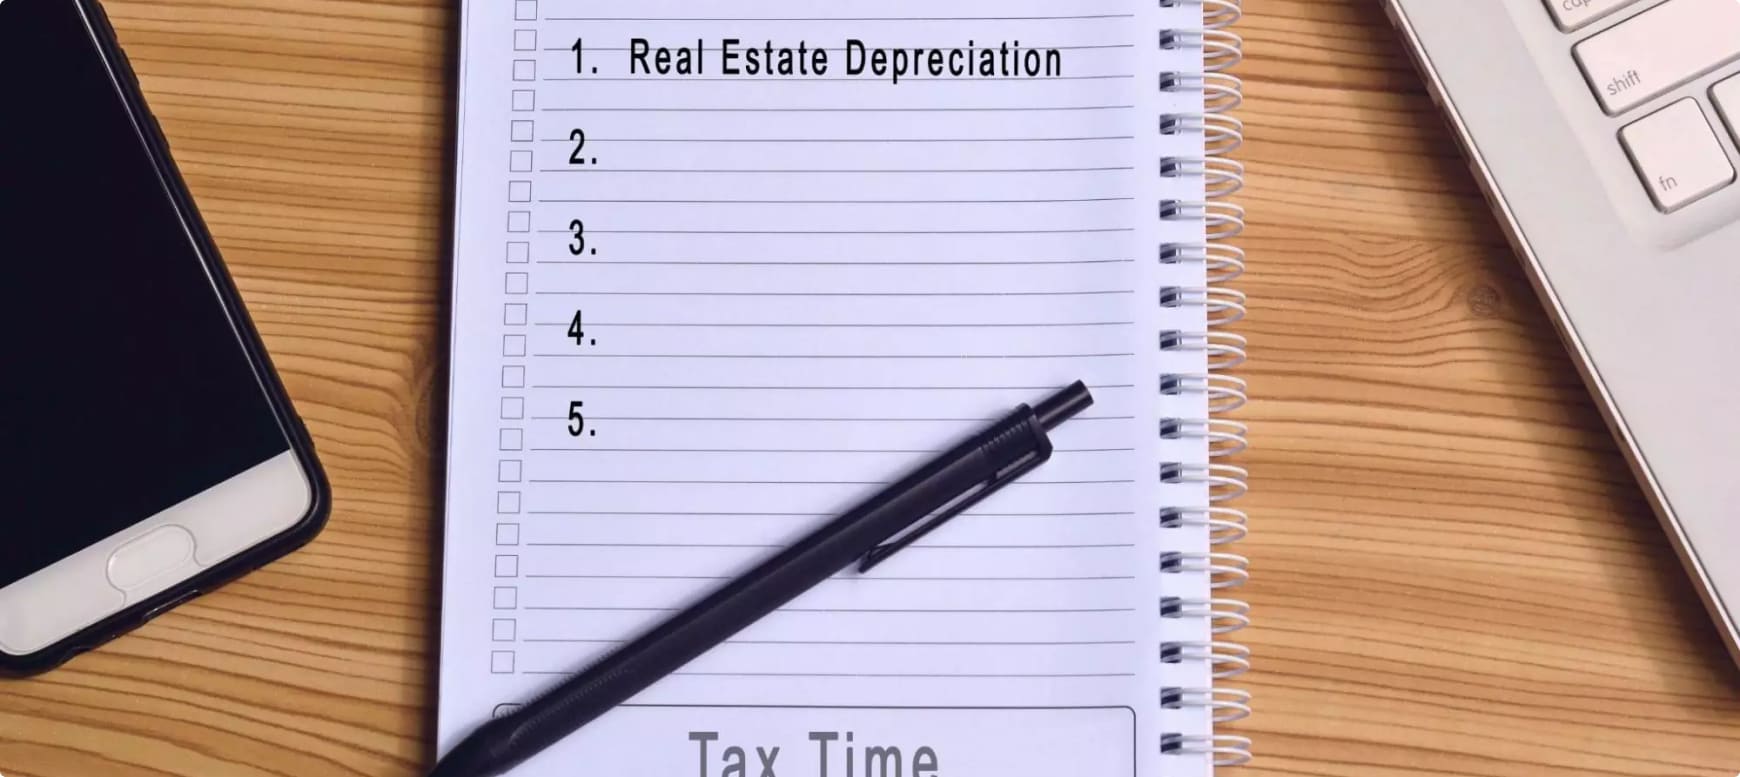 Own a Rental Property Make sure you take advantage of Rental Depreciation